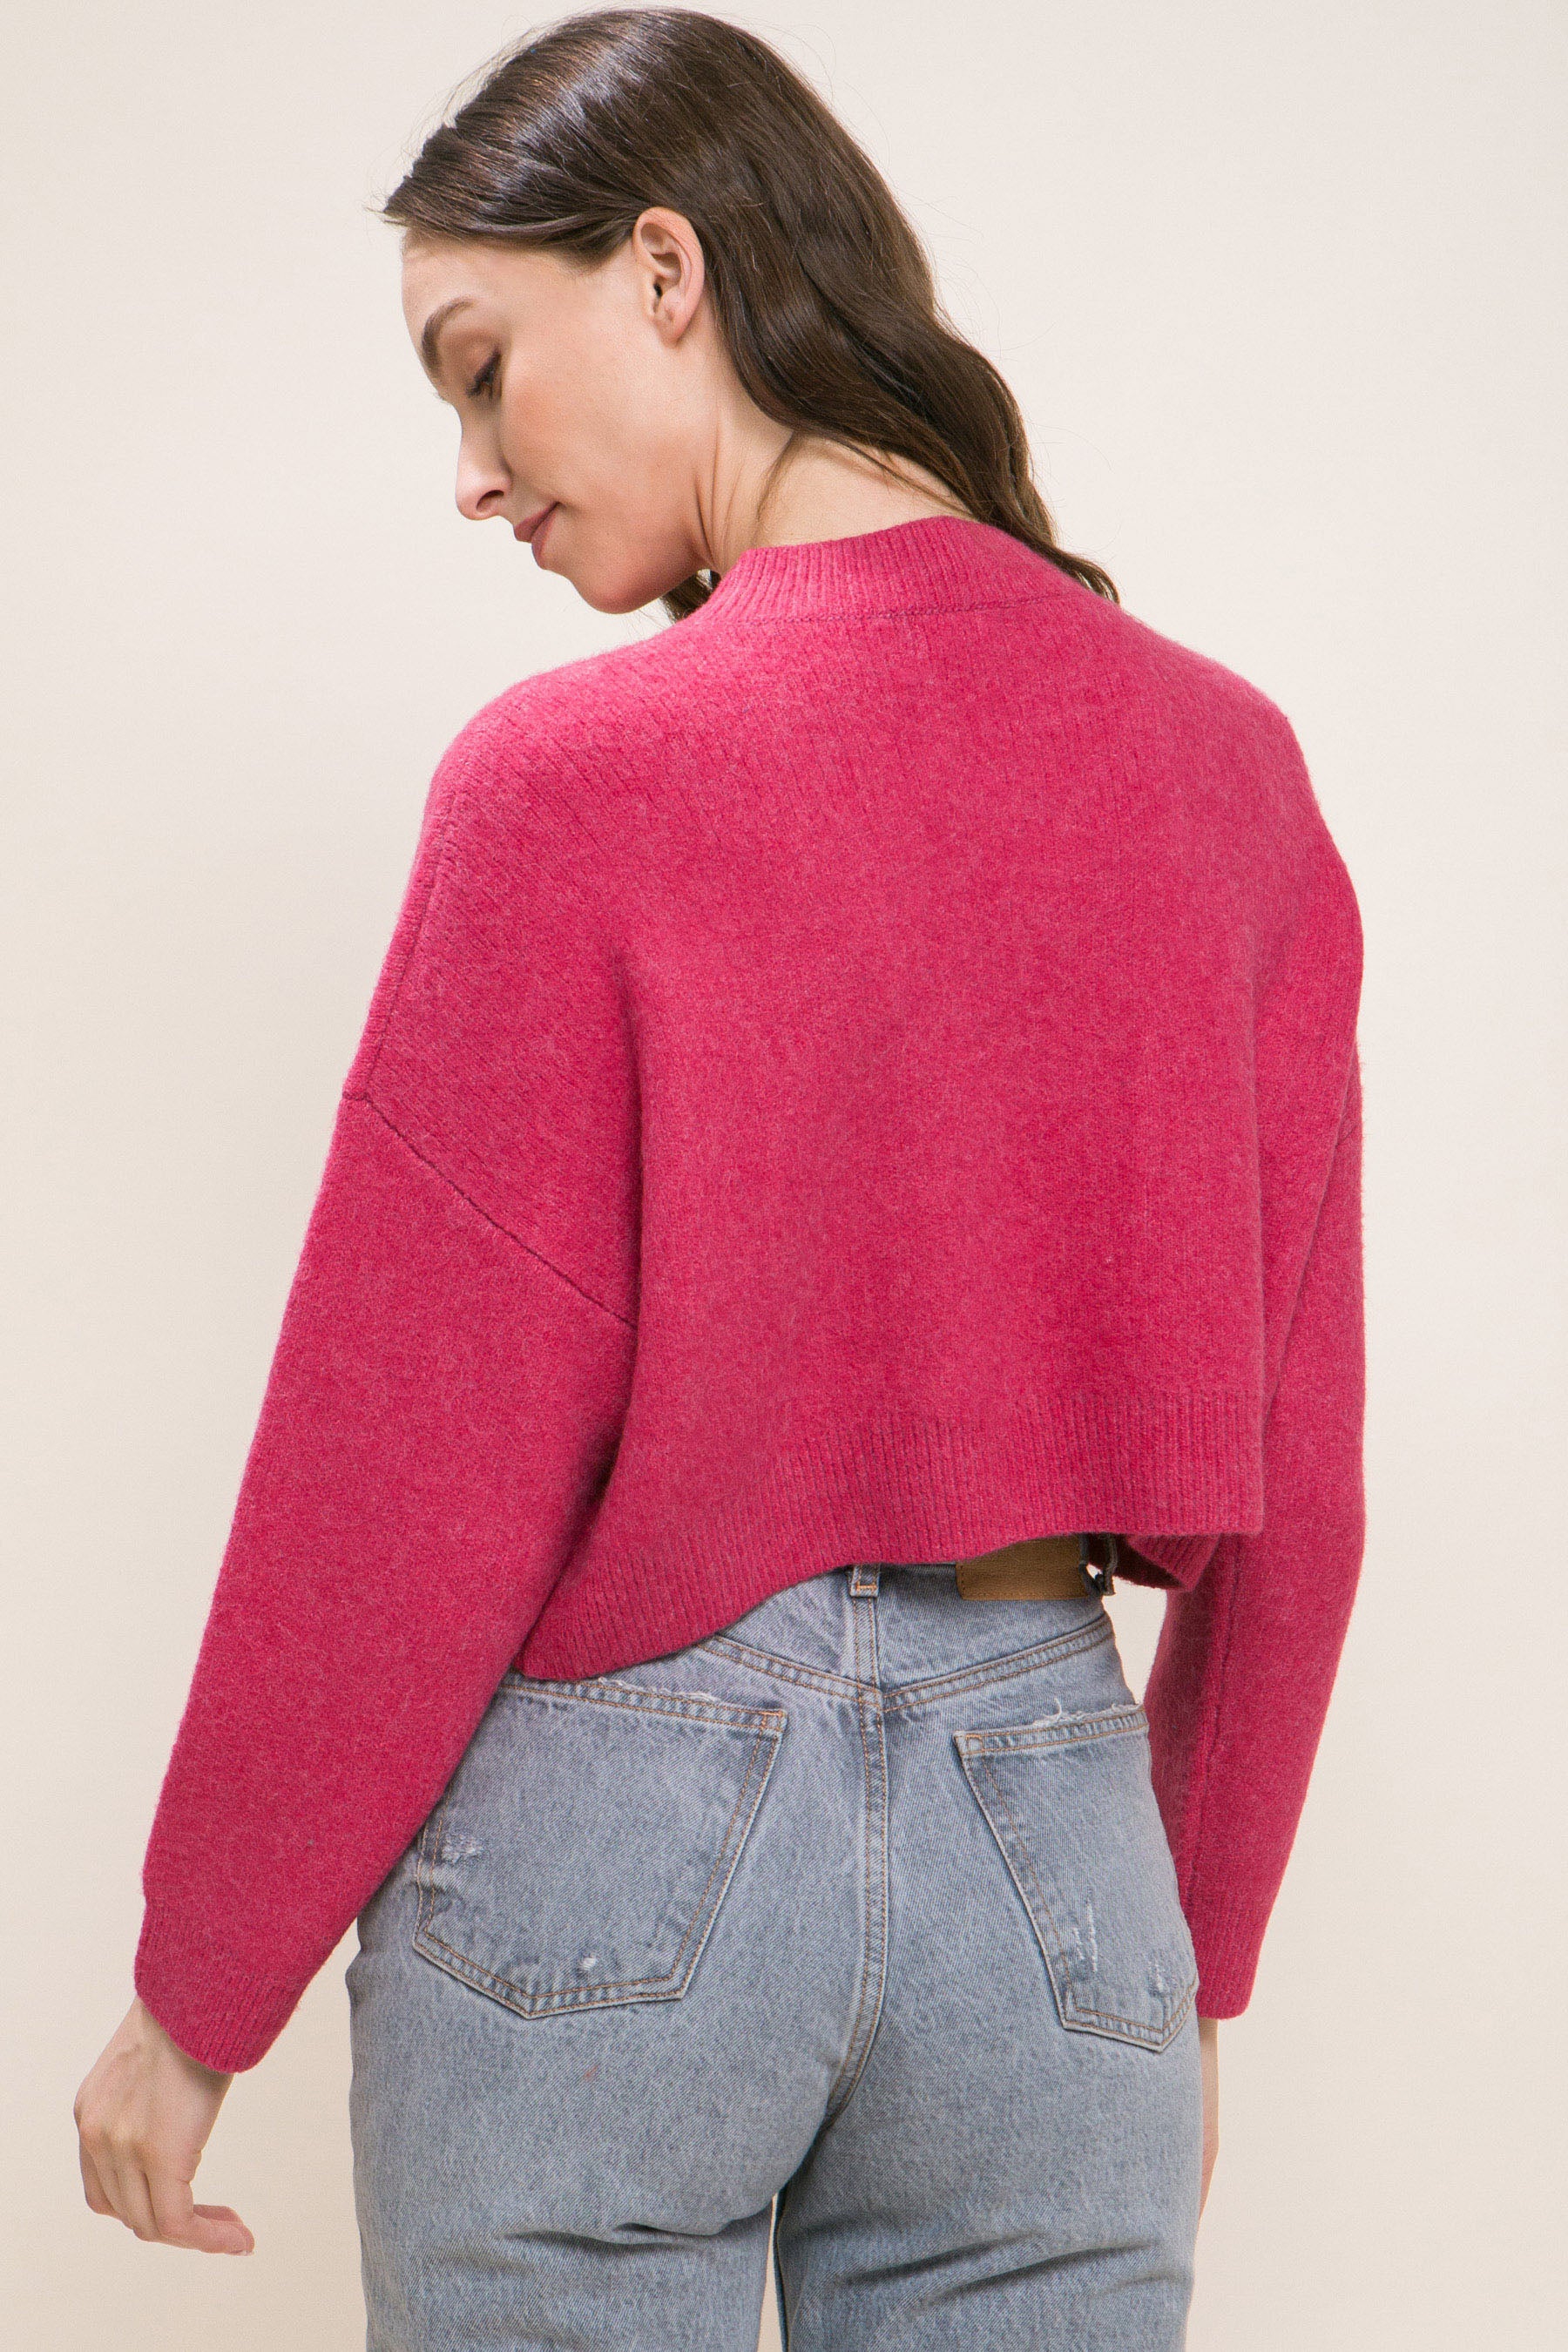 Wool Blend Cropped Sweater Top - Body By J'ne